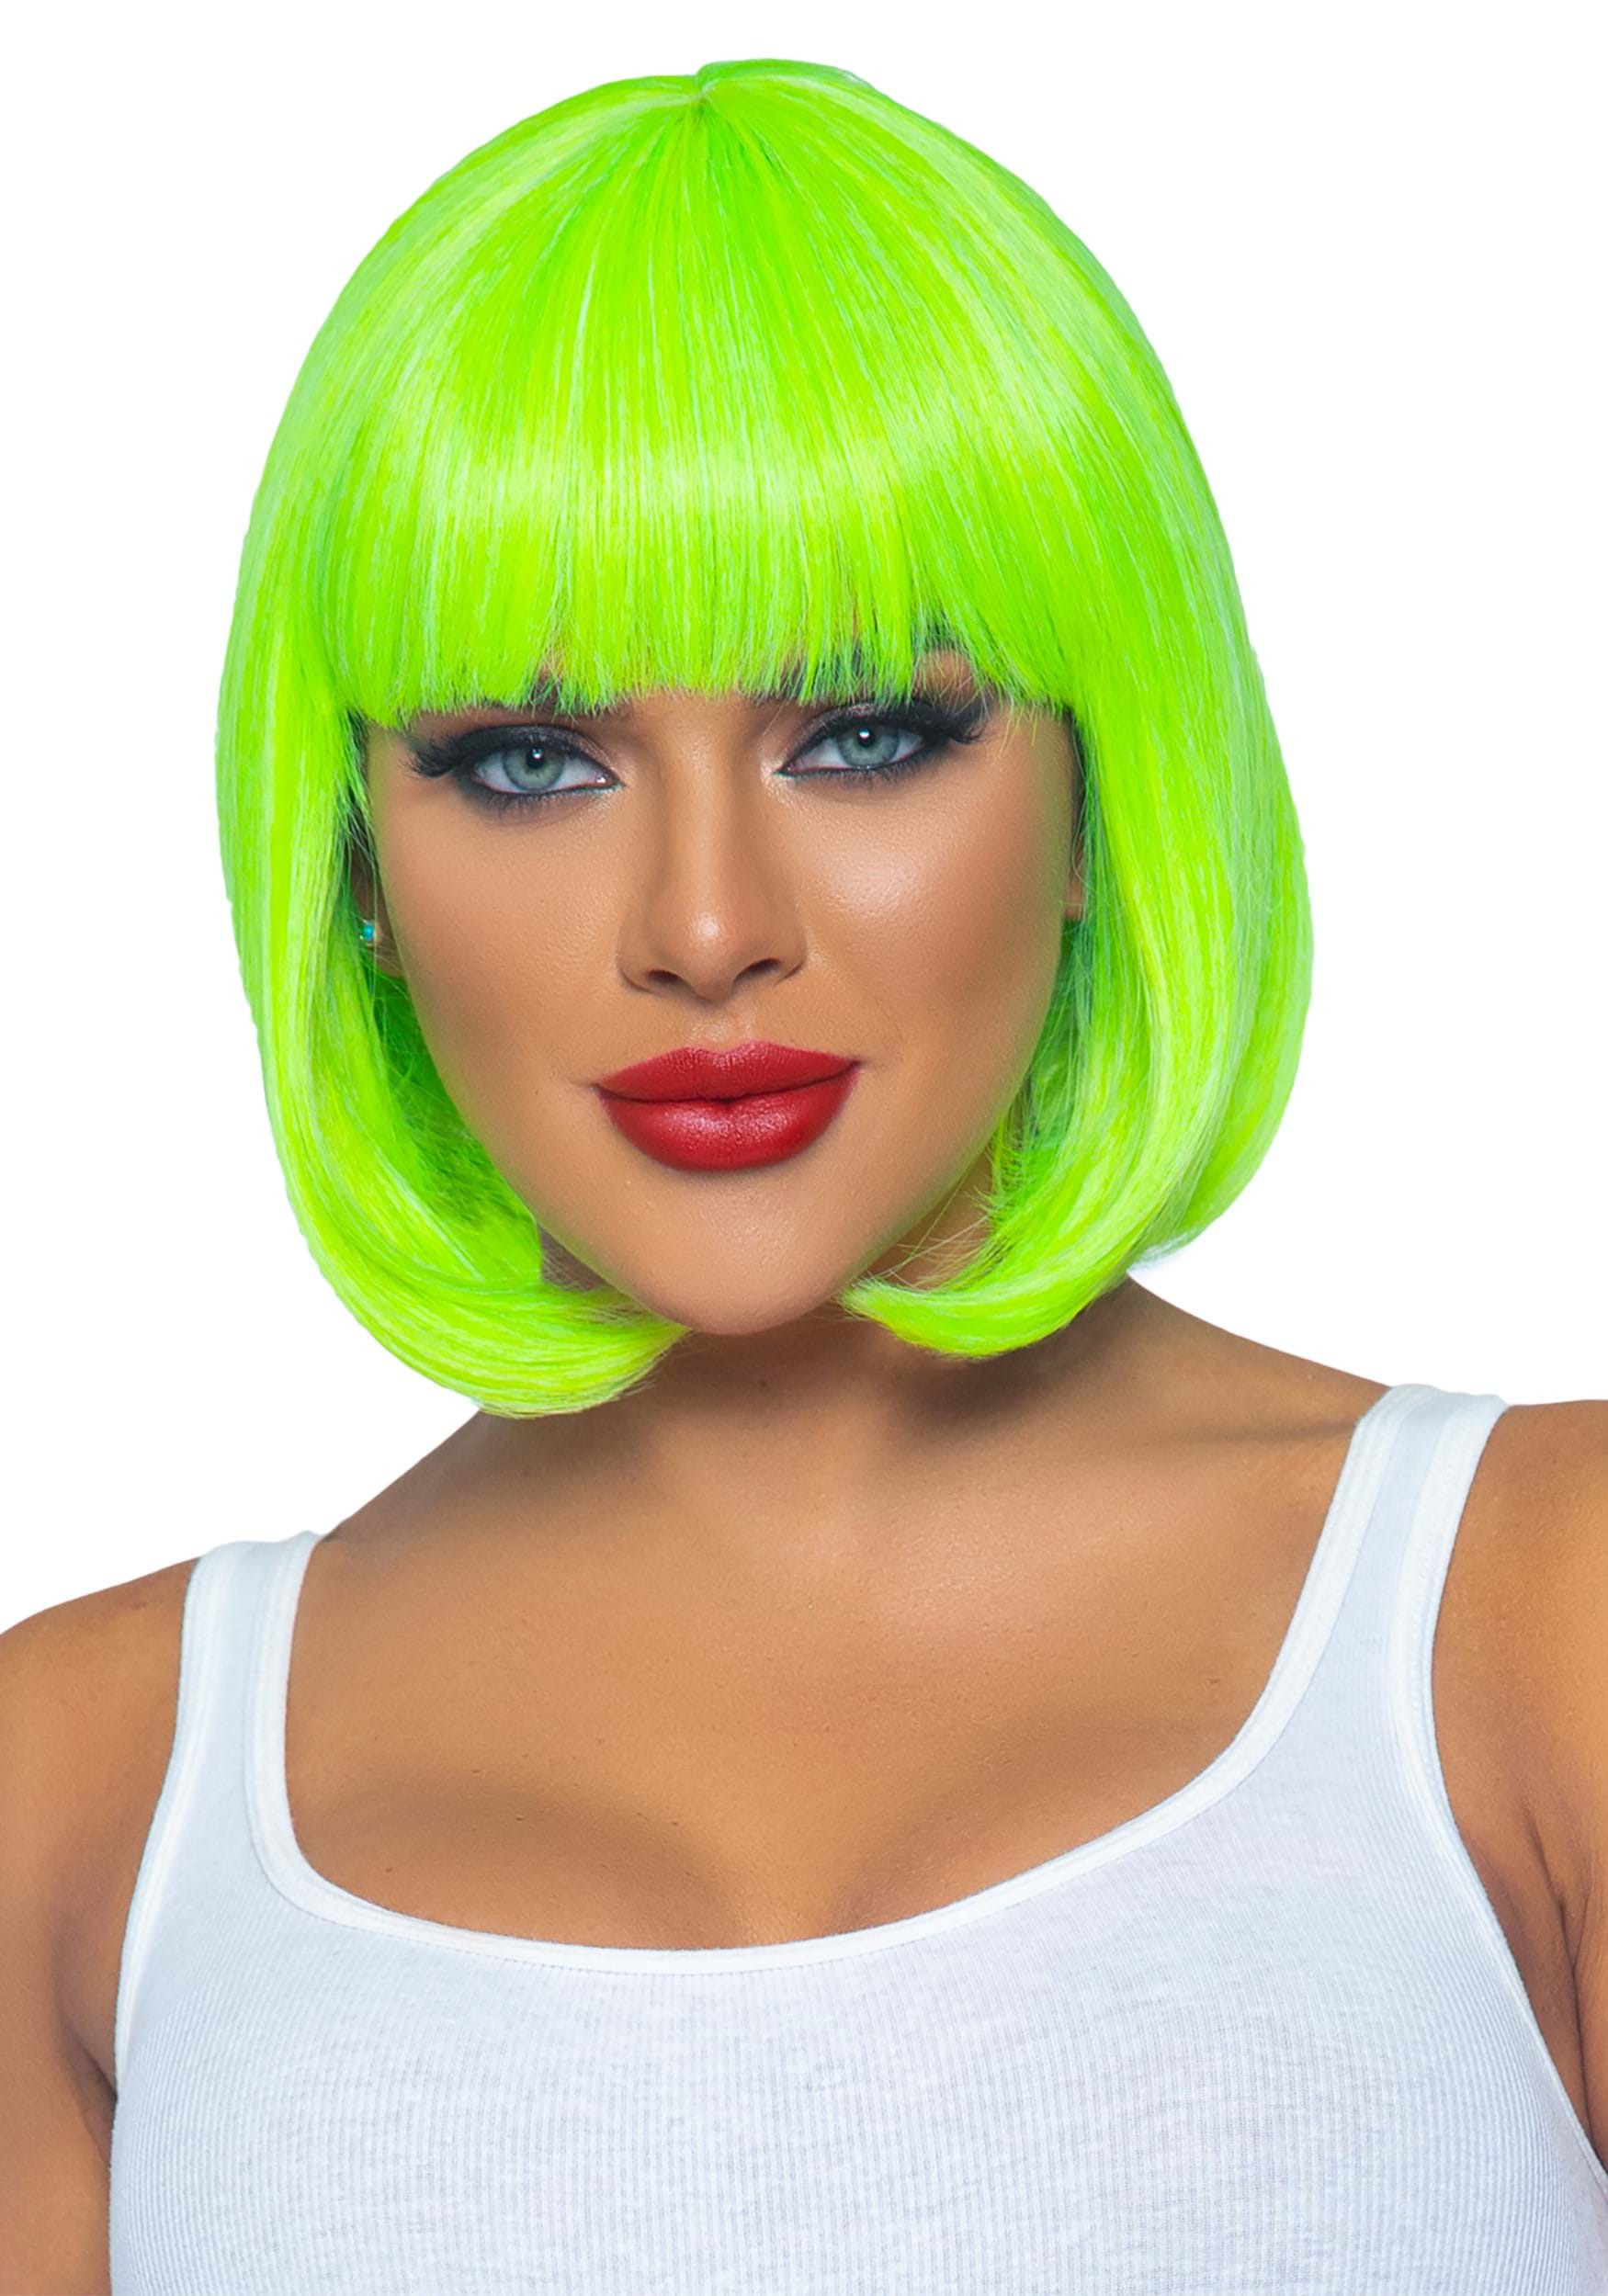 Women’s Neon Green Short Bob Wig